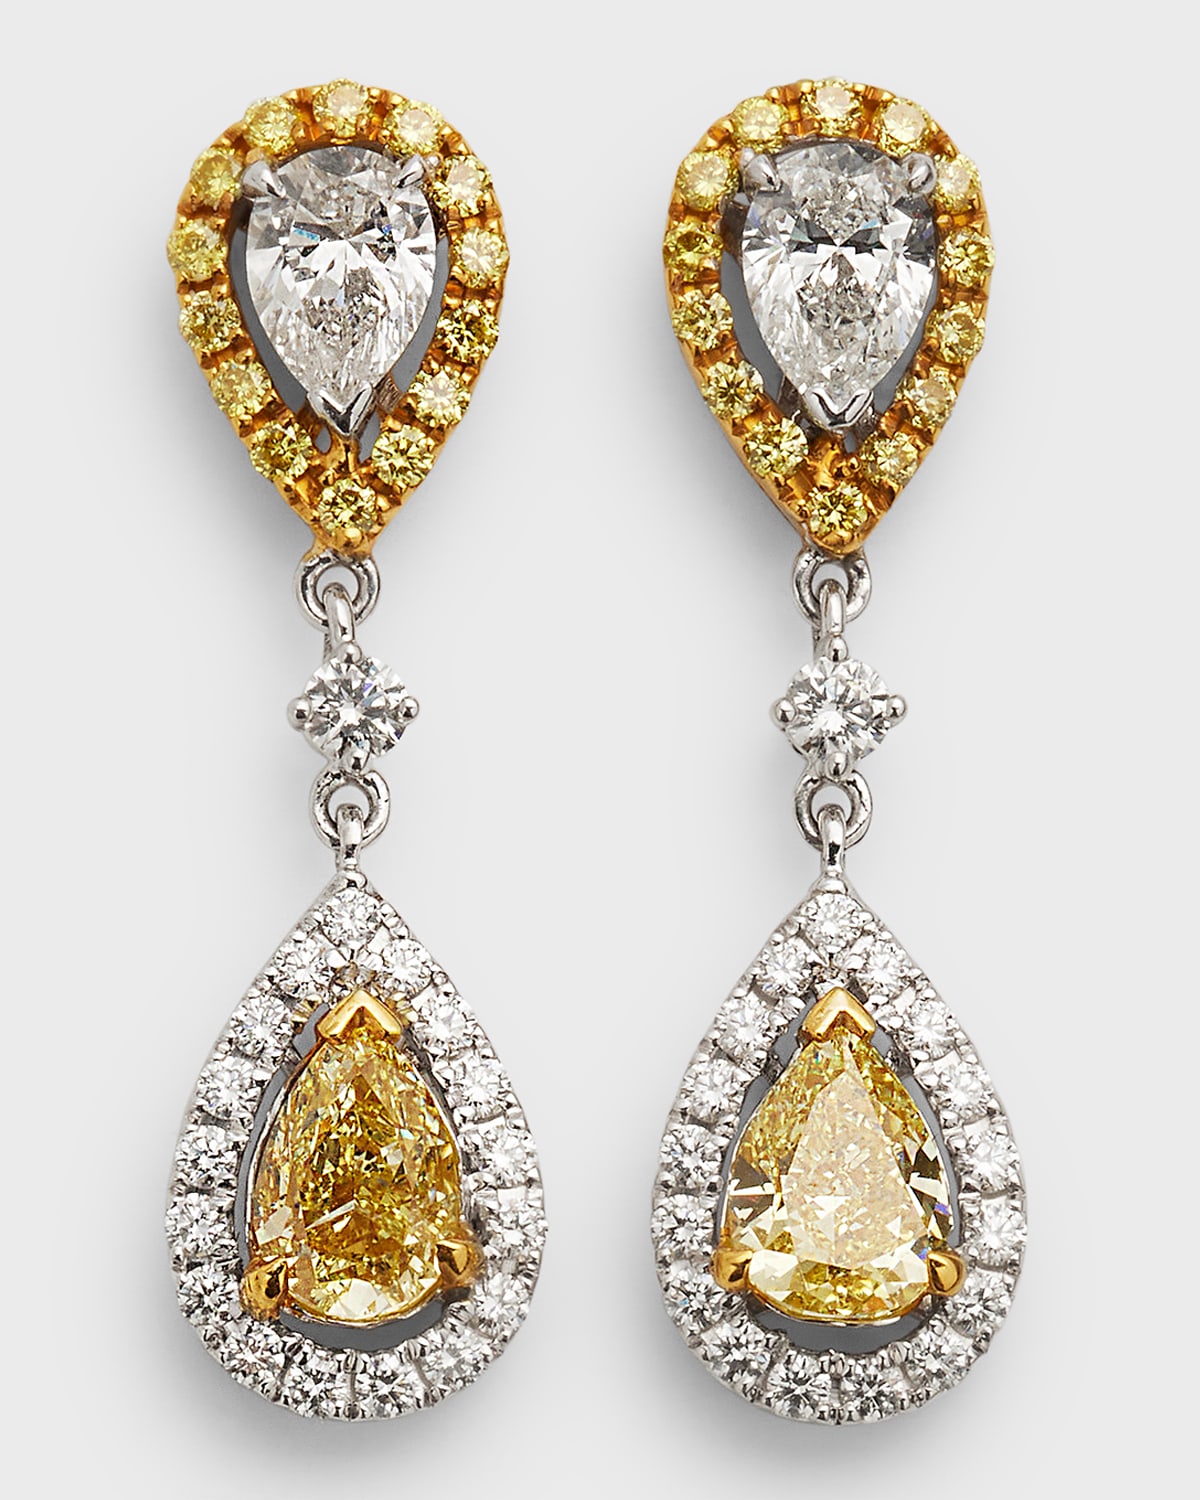 Alexander Laut Double Drop GH/VS1  Diamond Earrings